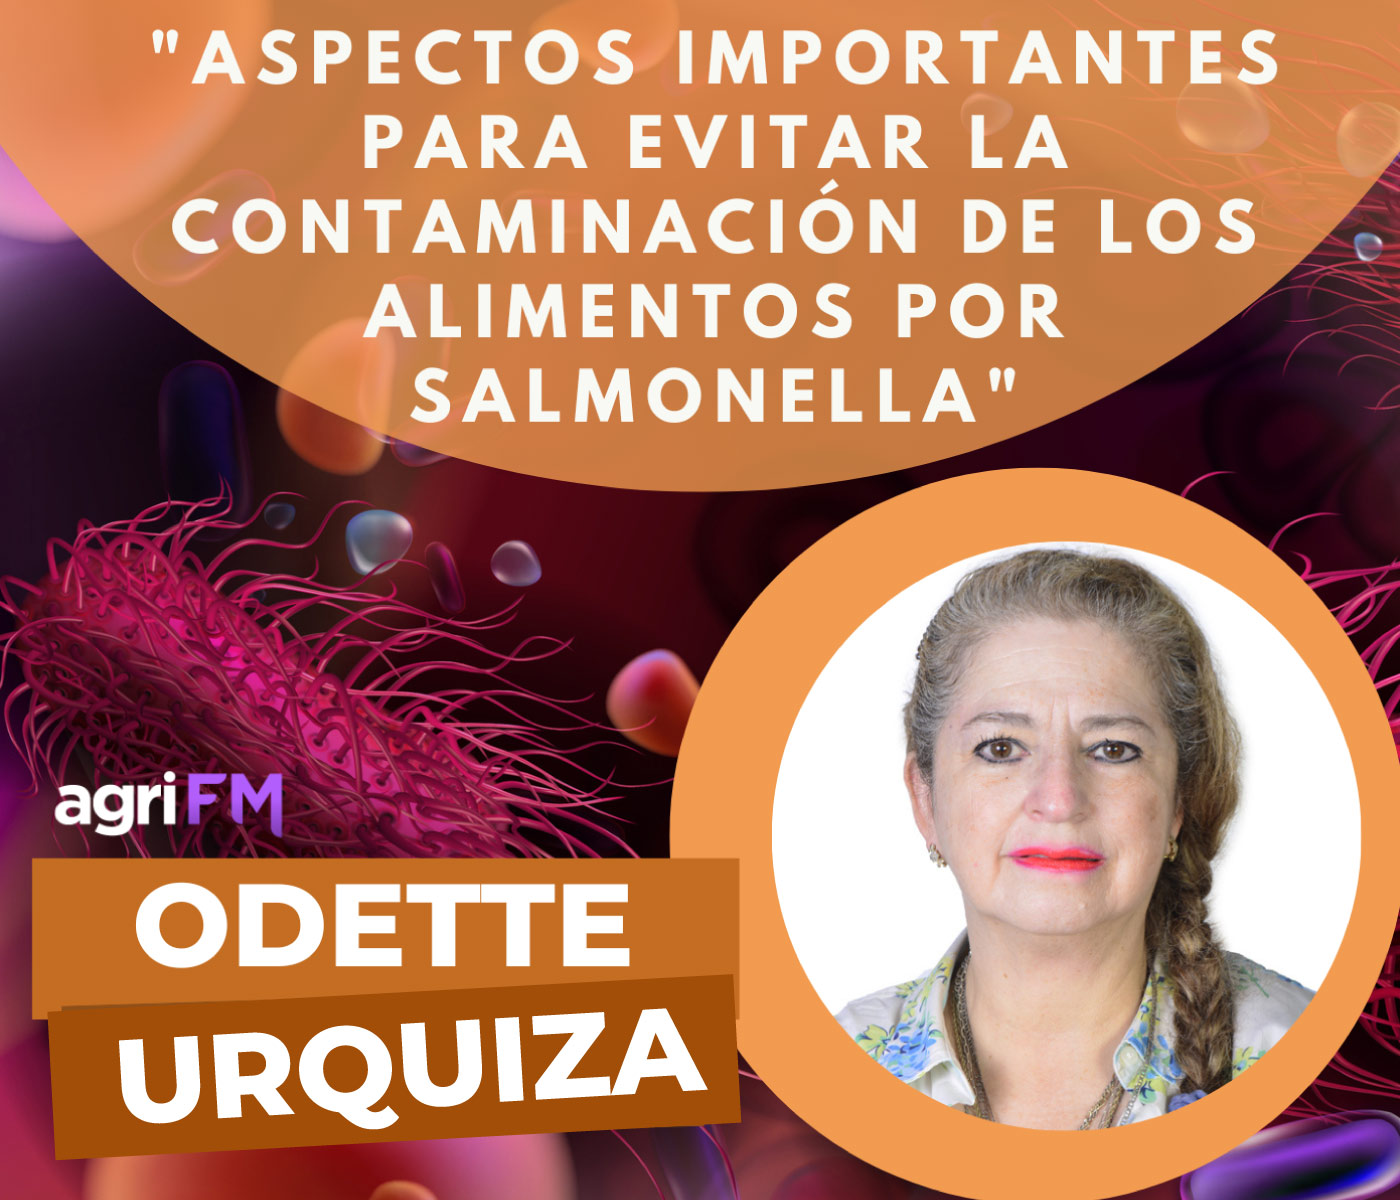 Dra. Odette Urquiza: ¿Cómo evitar la contaminación de los alimentos por Salmonella?